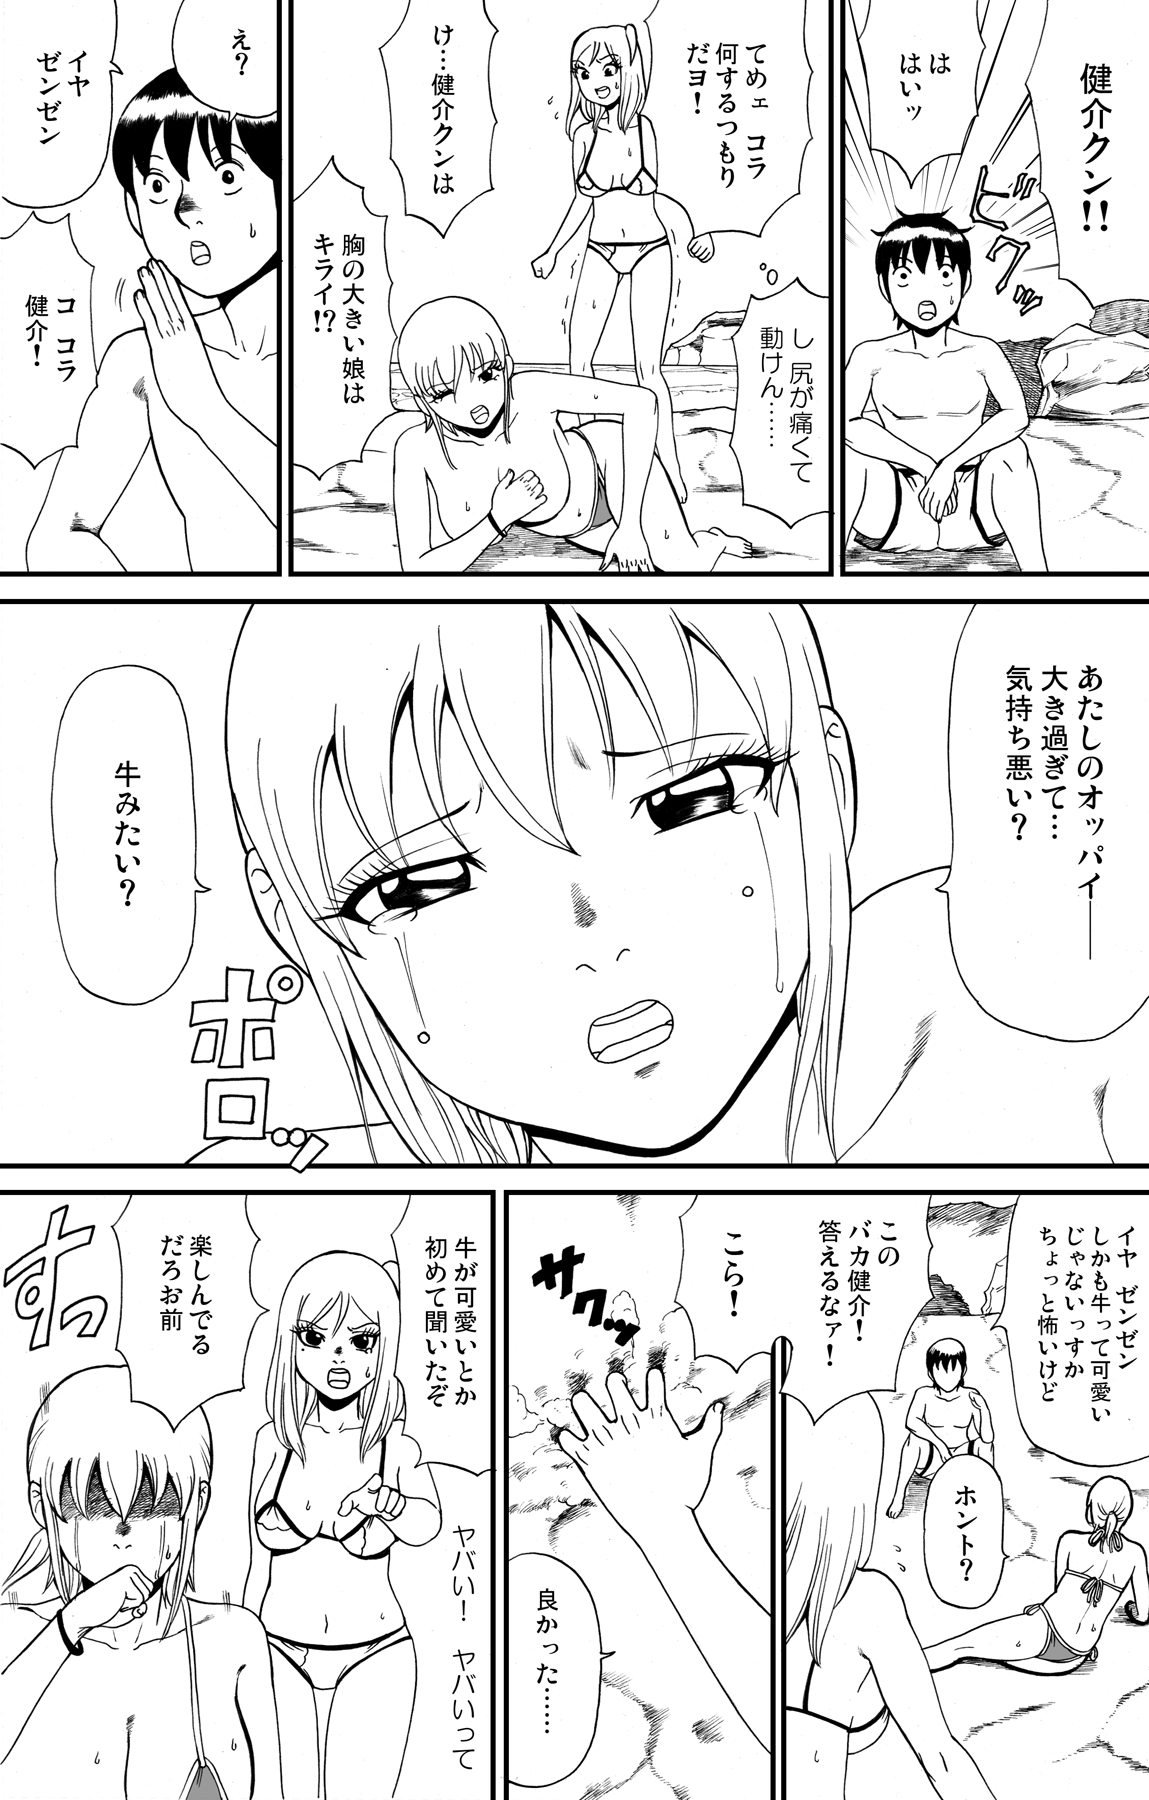 [nekomajin] fuwapoyo page 36 full